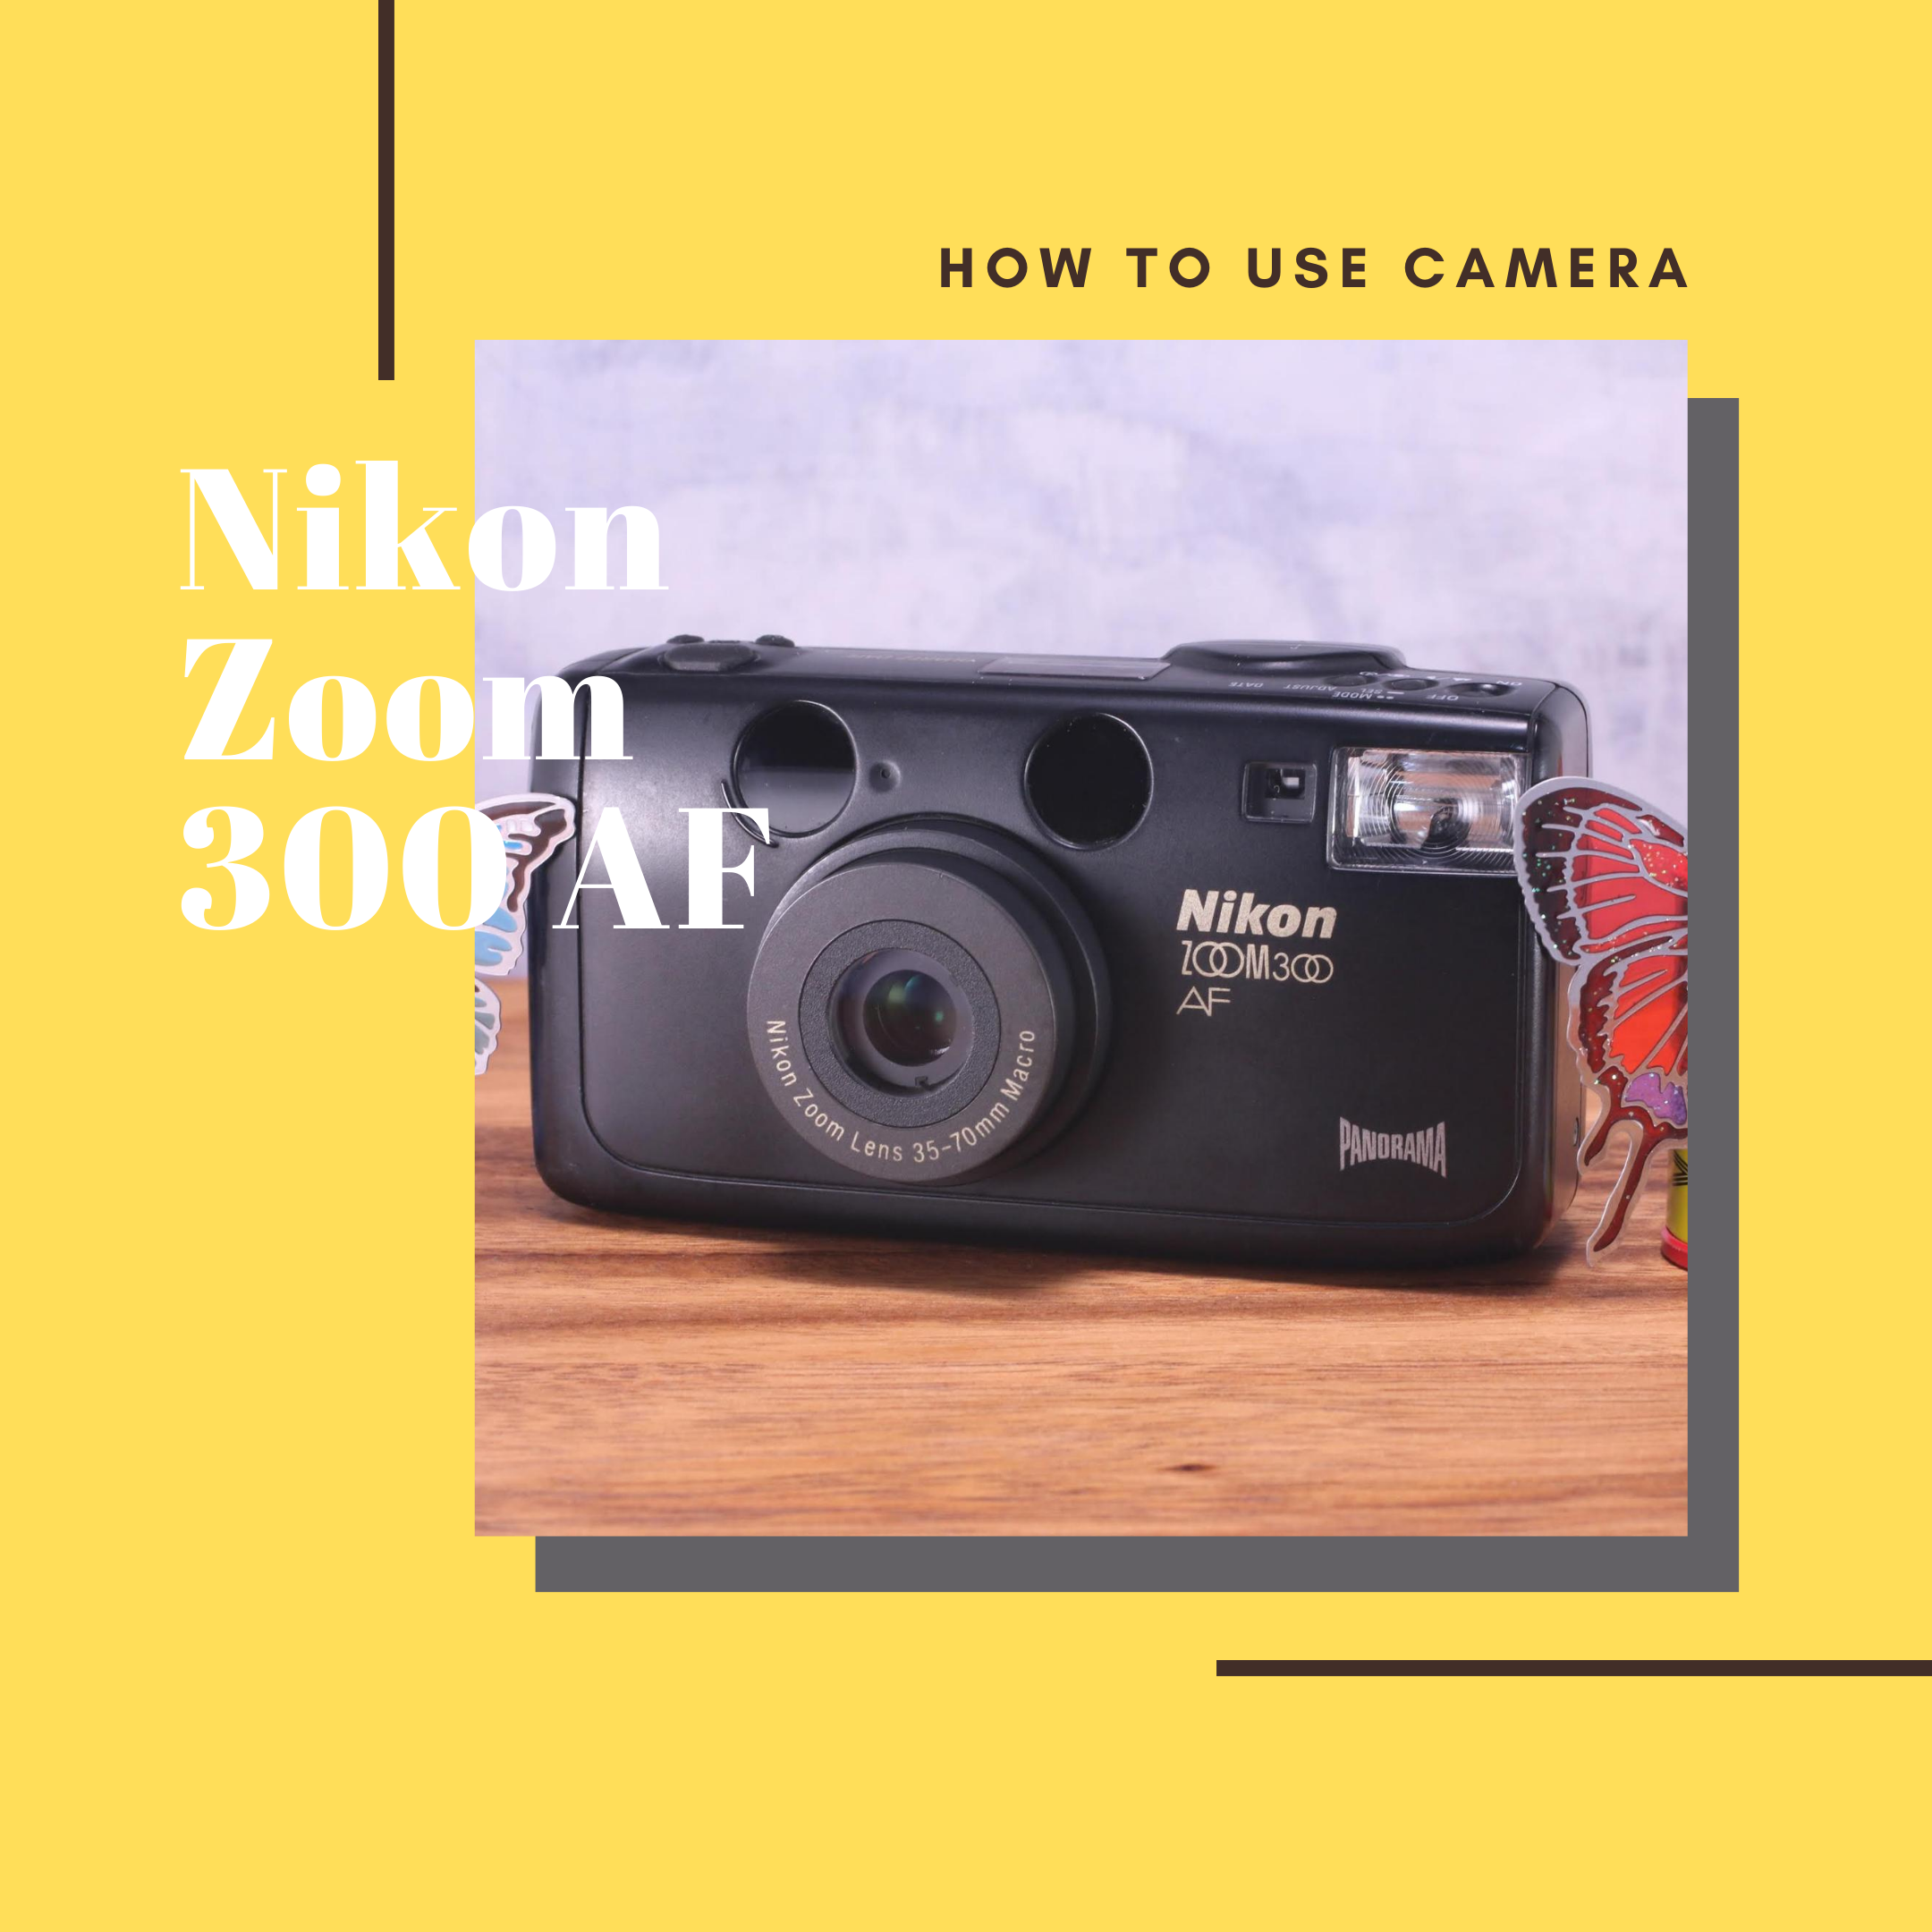 Nikon ZOOM 300 AF の使い方 | Totte Me Camera